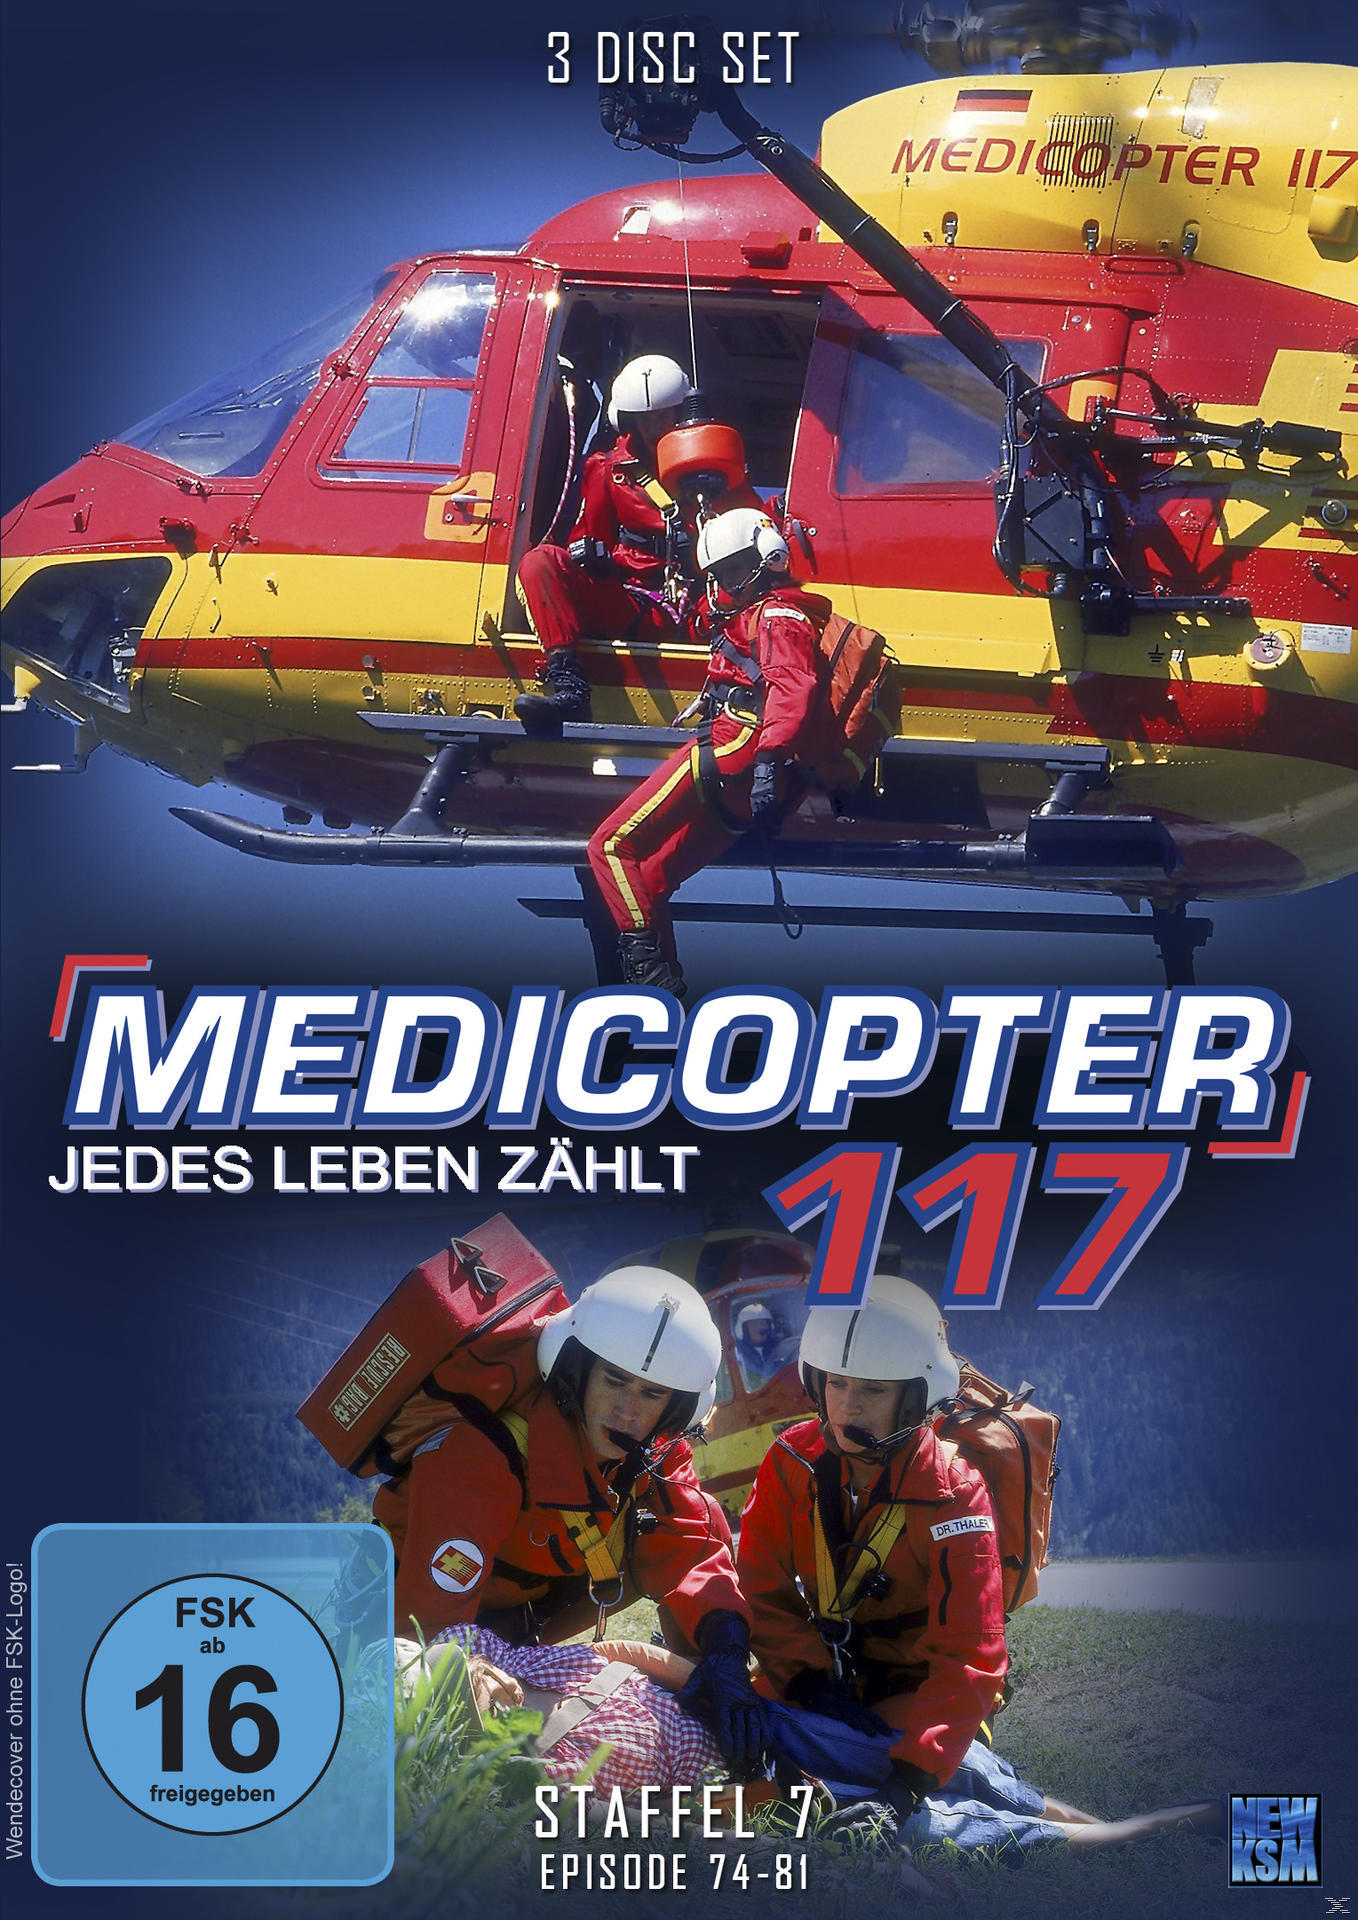 Medicopter 117 - Staffel DVD 7